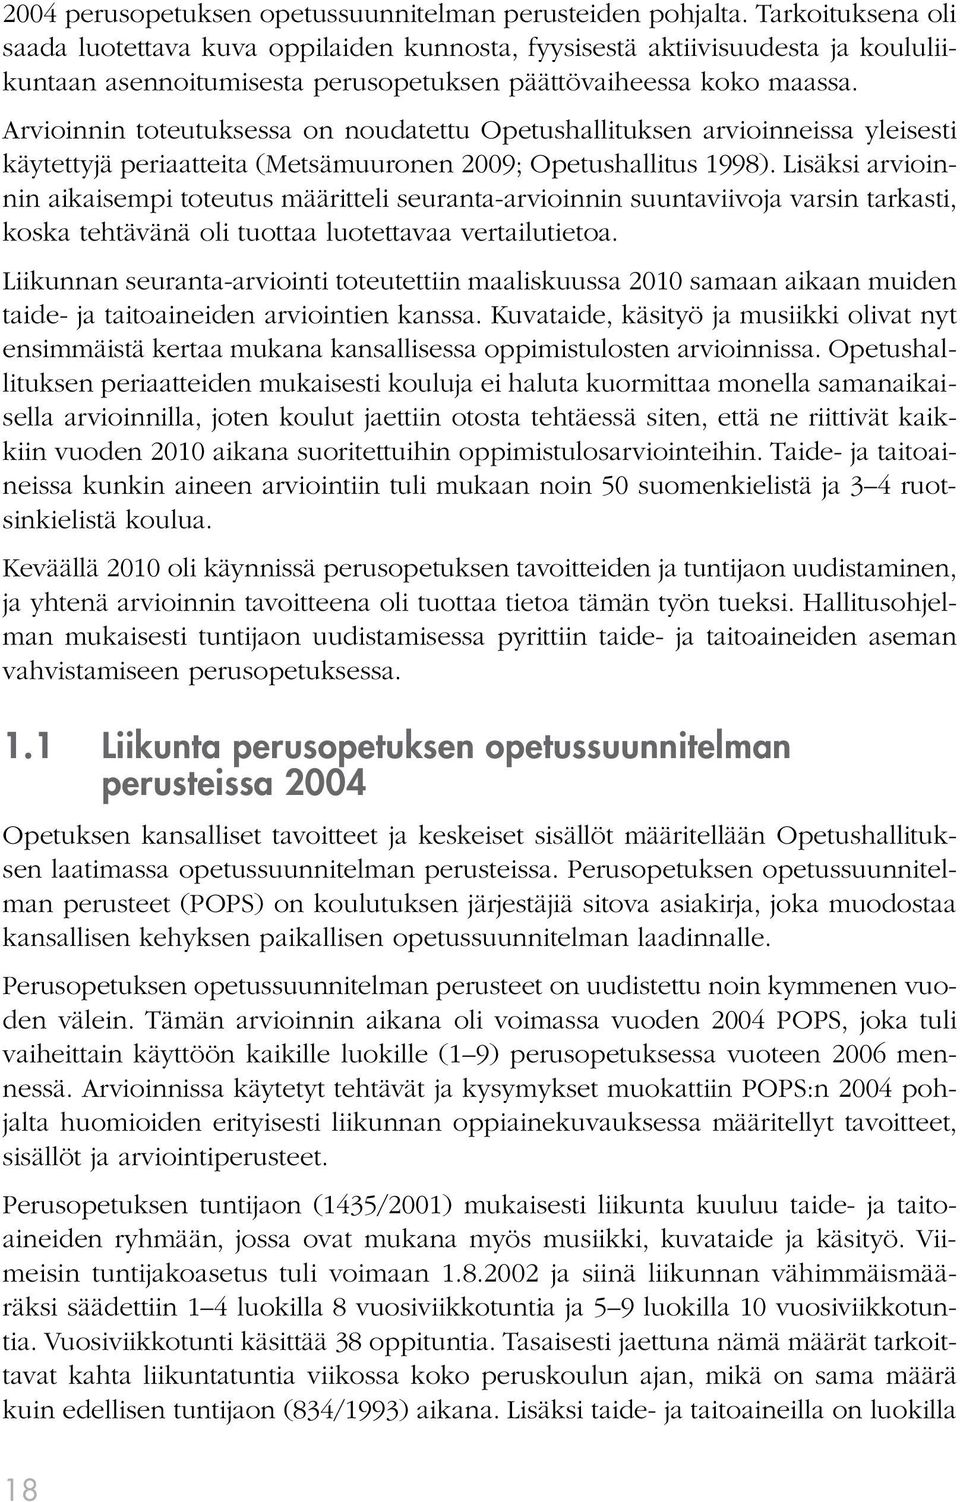 Arvioinnin toteutuksessa on noudatettu Opetushallituksen arvioinneissa yleisesti käytettyjä periaatteita (Metsämuuronen 2009; Opetushallitus 1998).